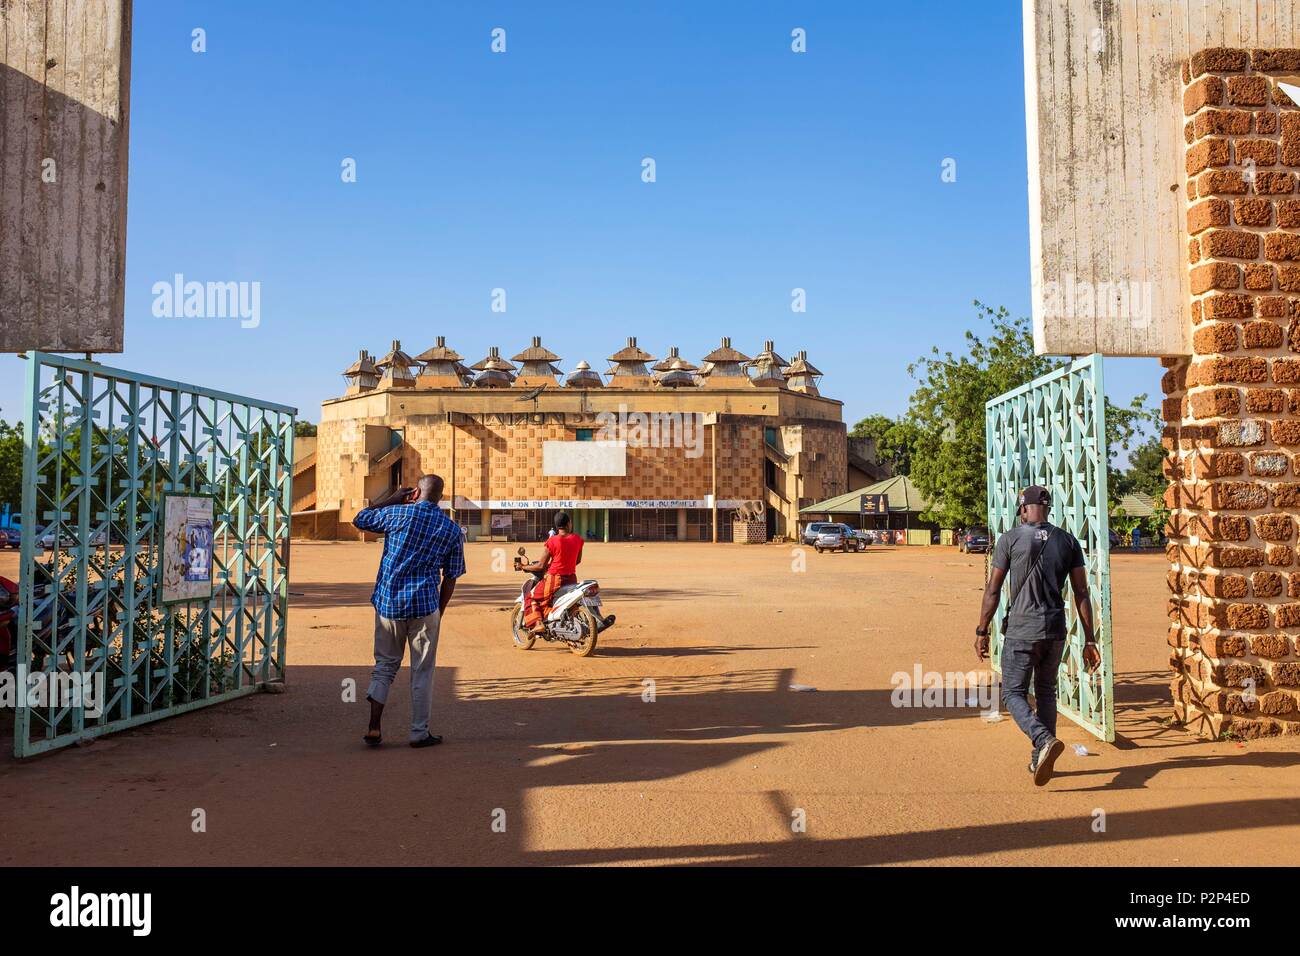 Le Burkina Faso, région Centre, Ouagadougou, le centre-ville, la maison du peuple, théâtre et salle de spectacle Banque D'Images